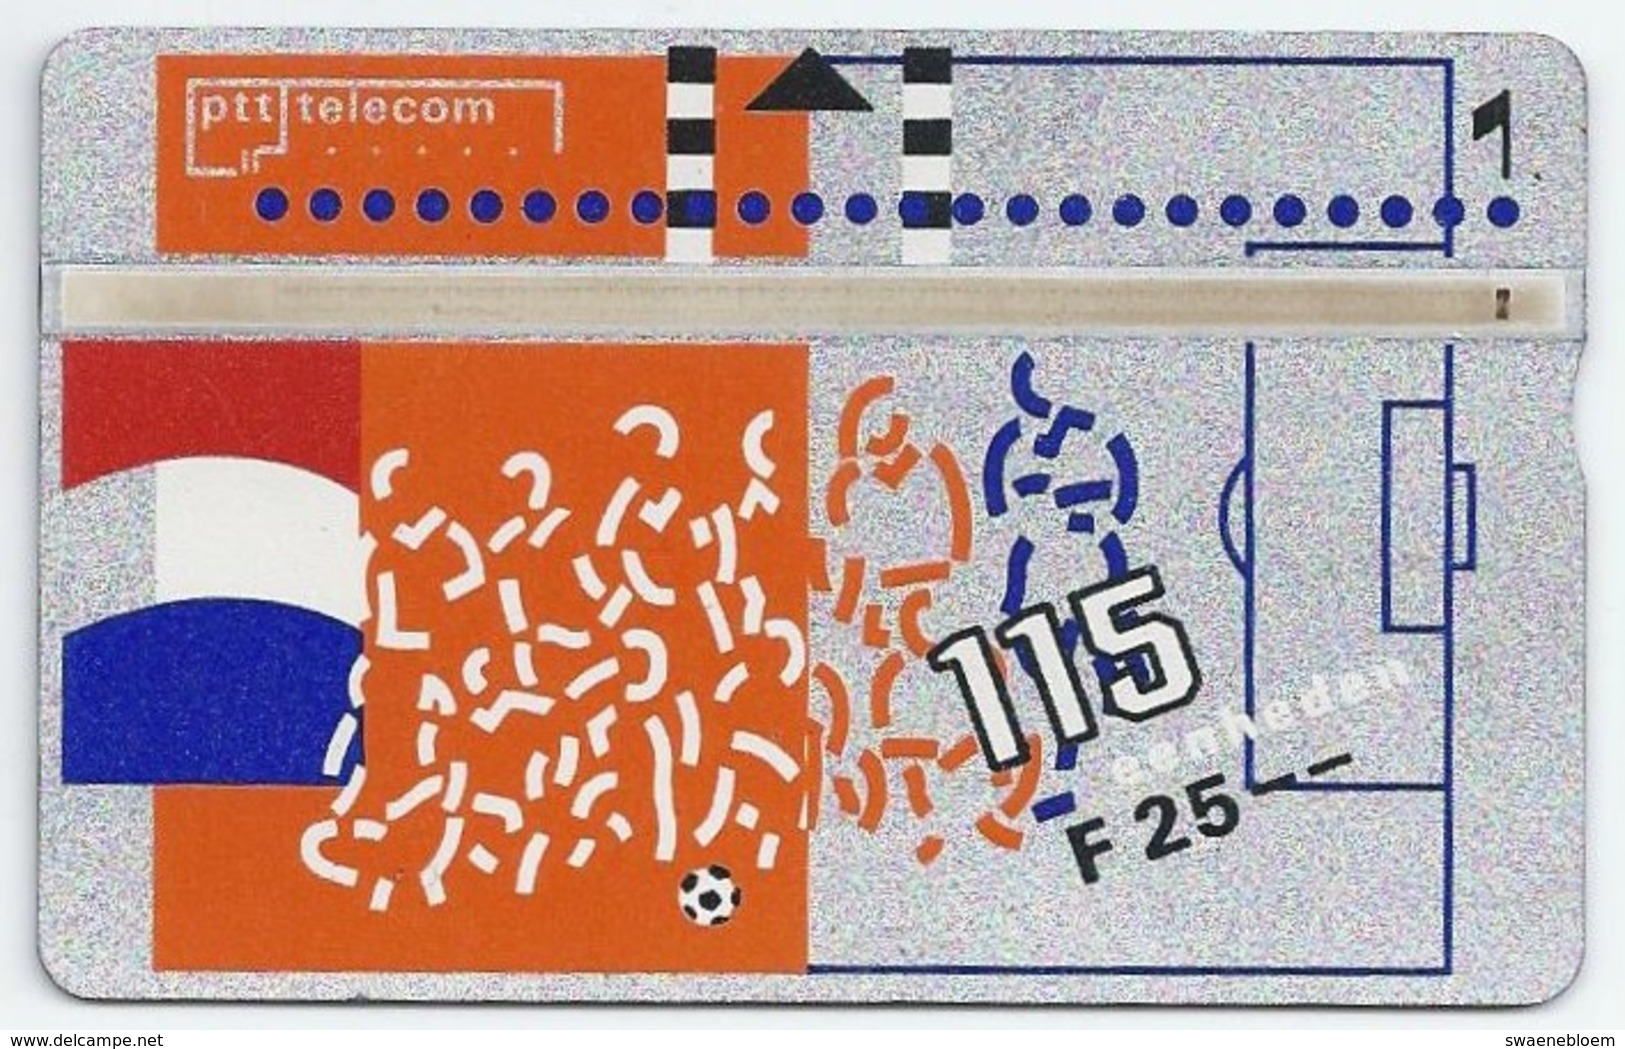 Telefoonkaart.- 131F. Nederland. PTT Telecom Is Officieel Sponsor Van De KNVB. Voetbal. Vlag. 25 Gulden. 115 Eenheden. - Public